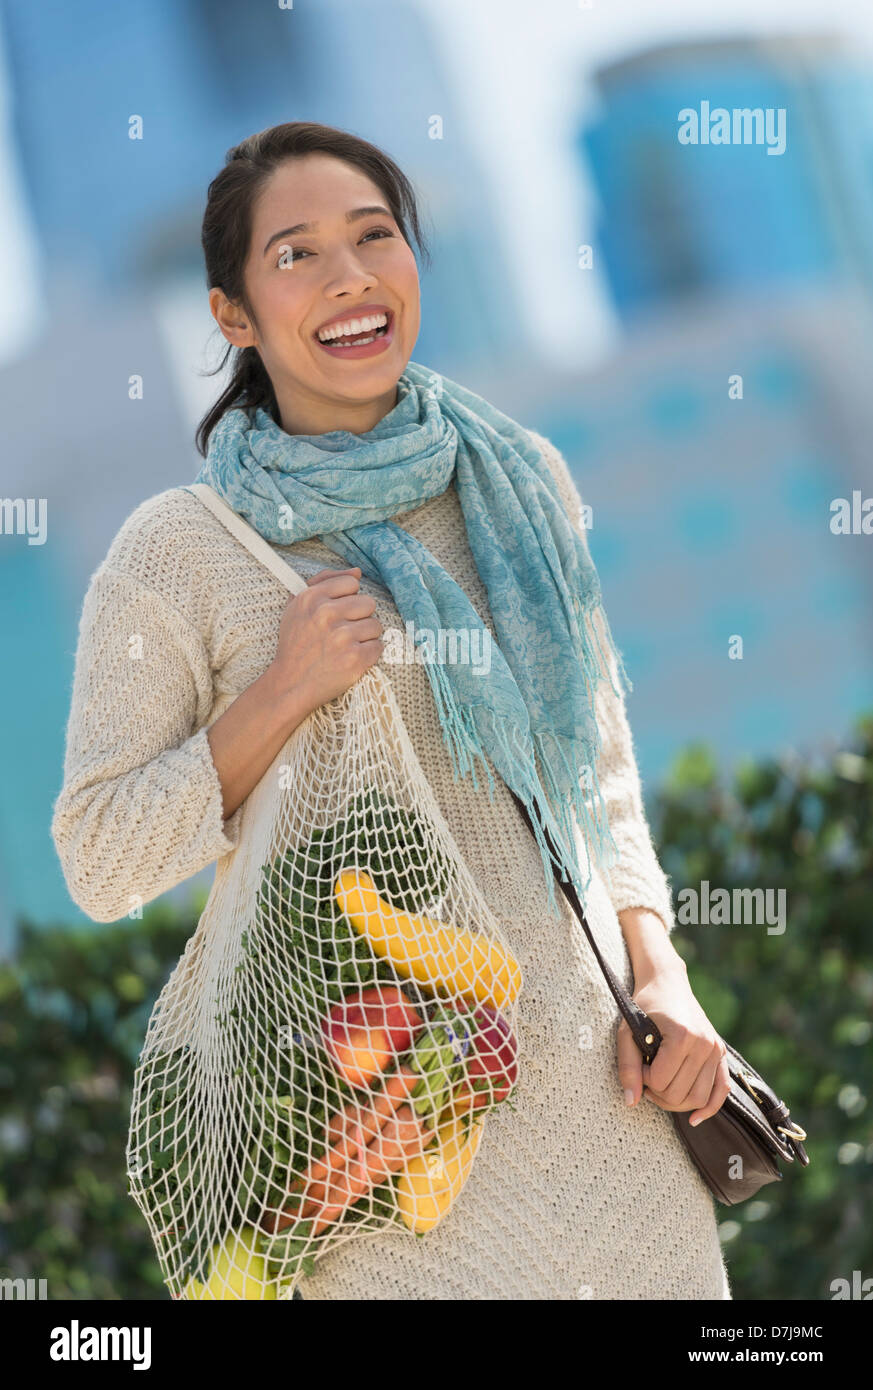 Ritratto di sorridente giovane donna con negozio di generi alimentari shopping bag Foto Stock